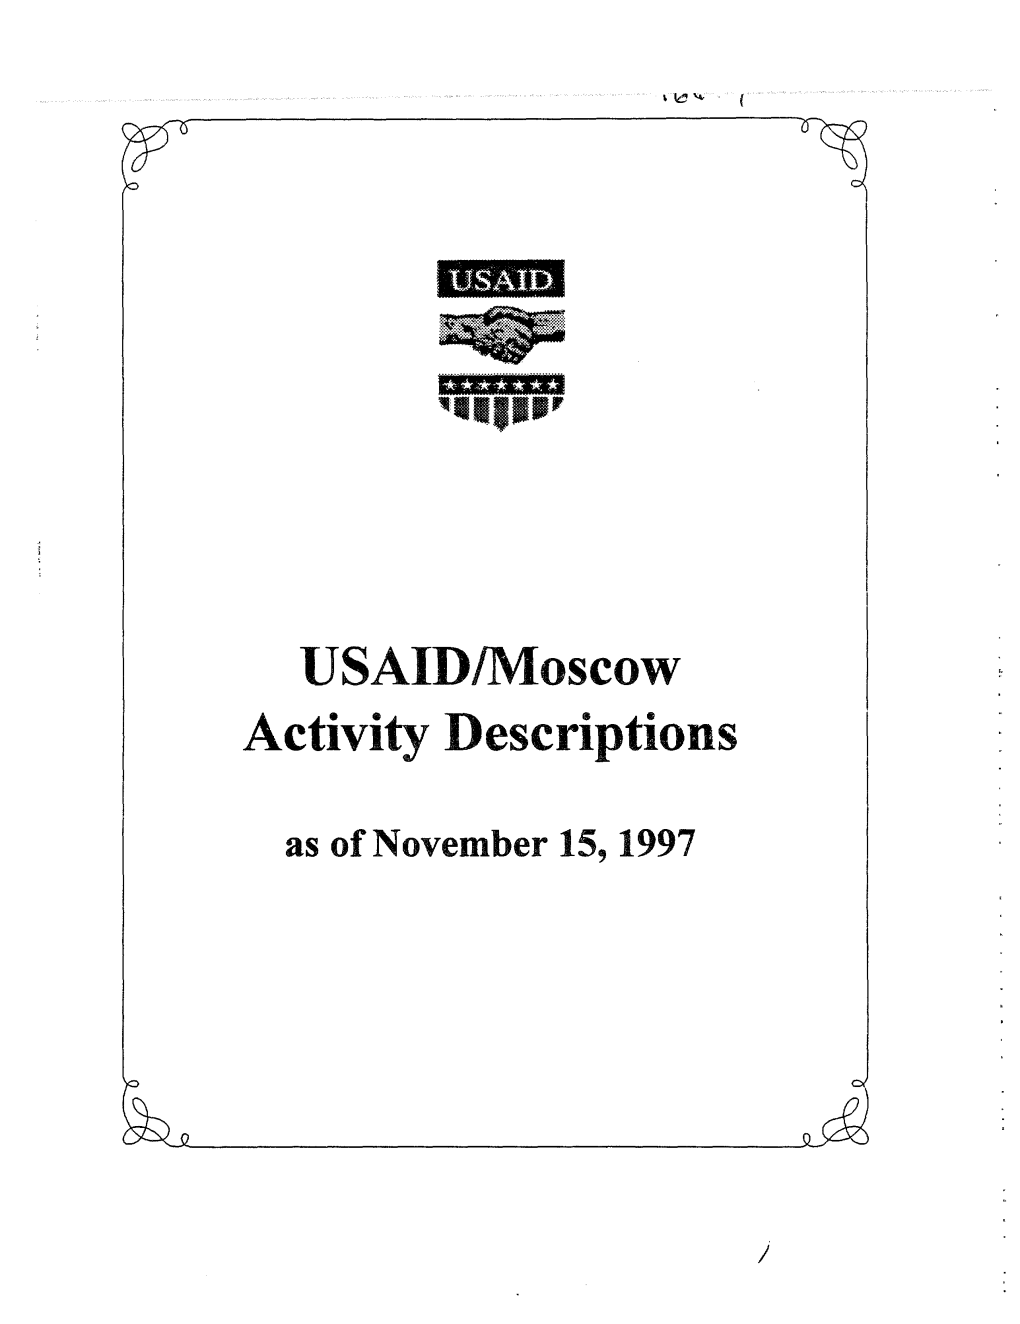 USAID Activity Descriptions